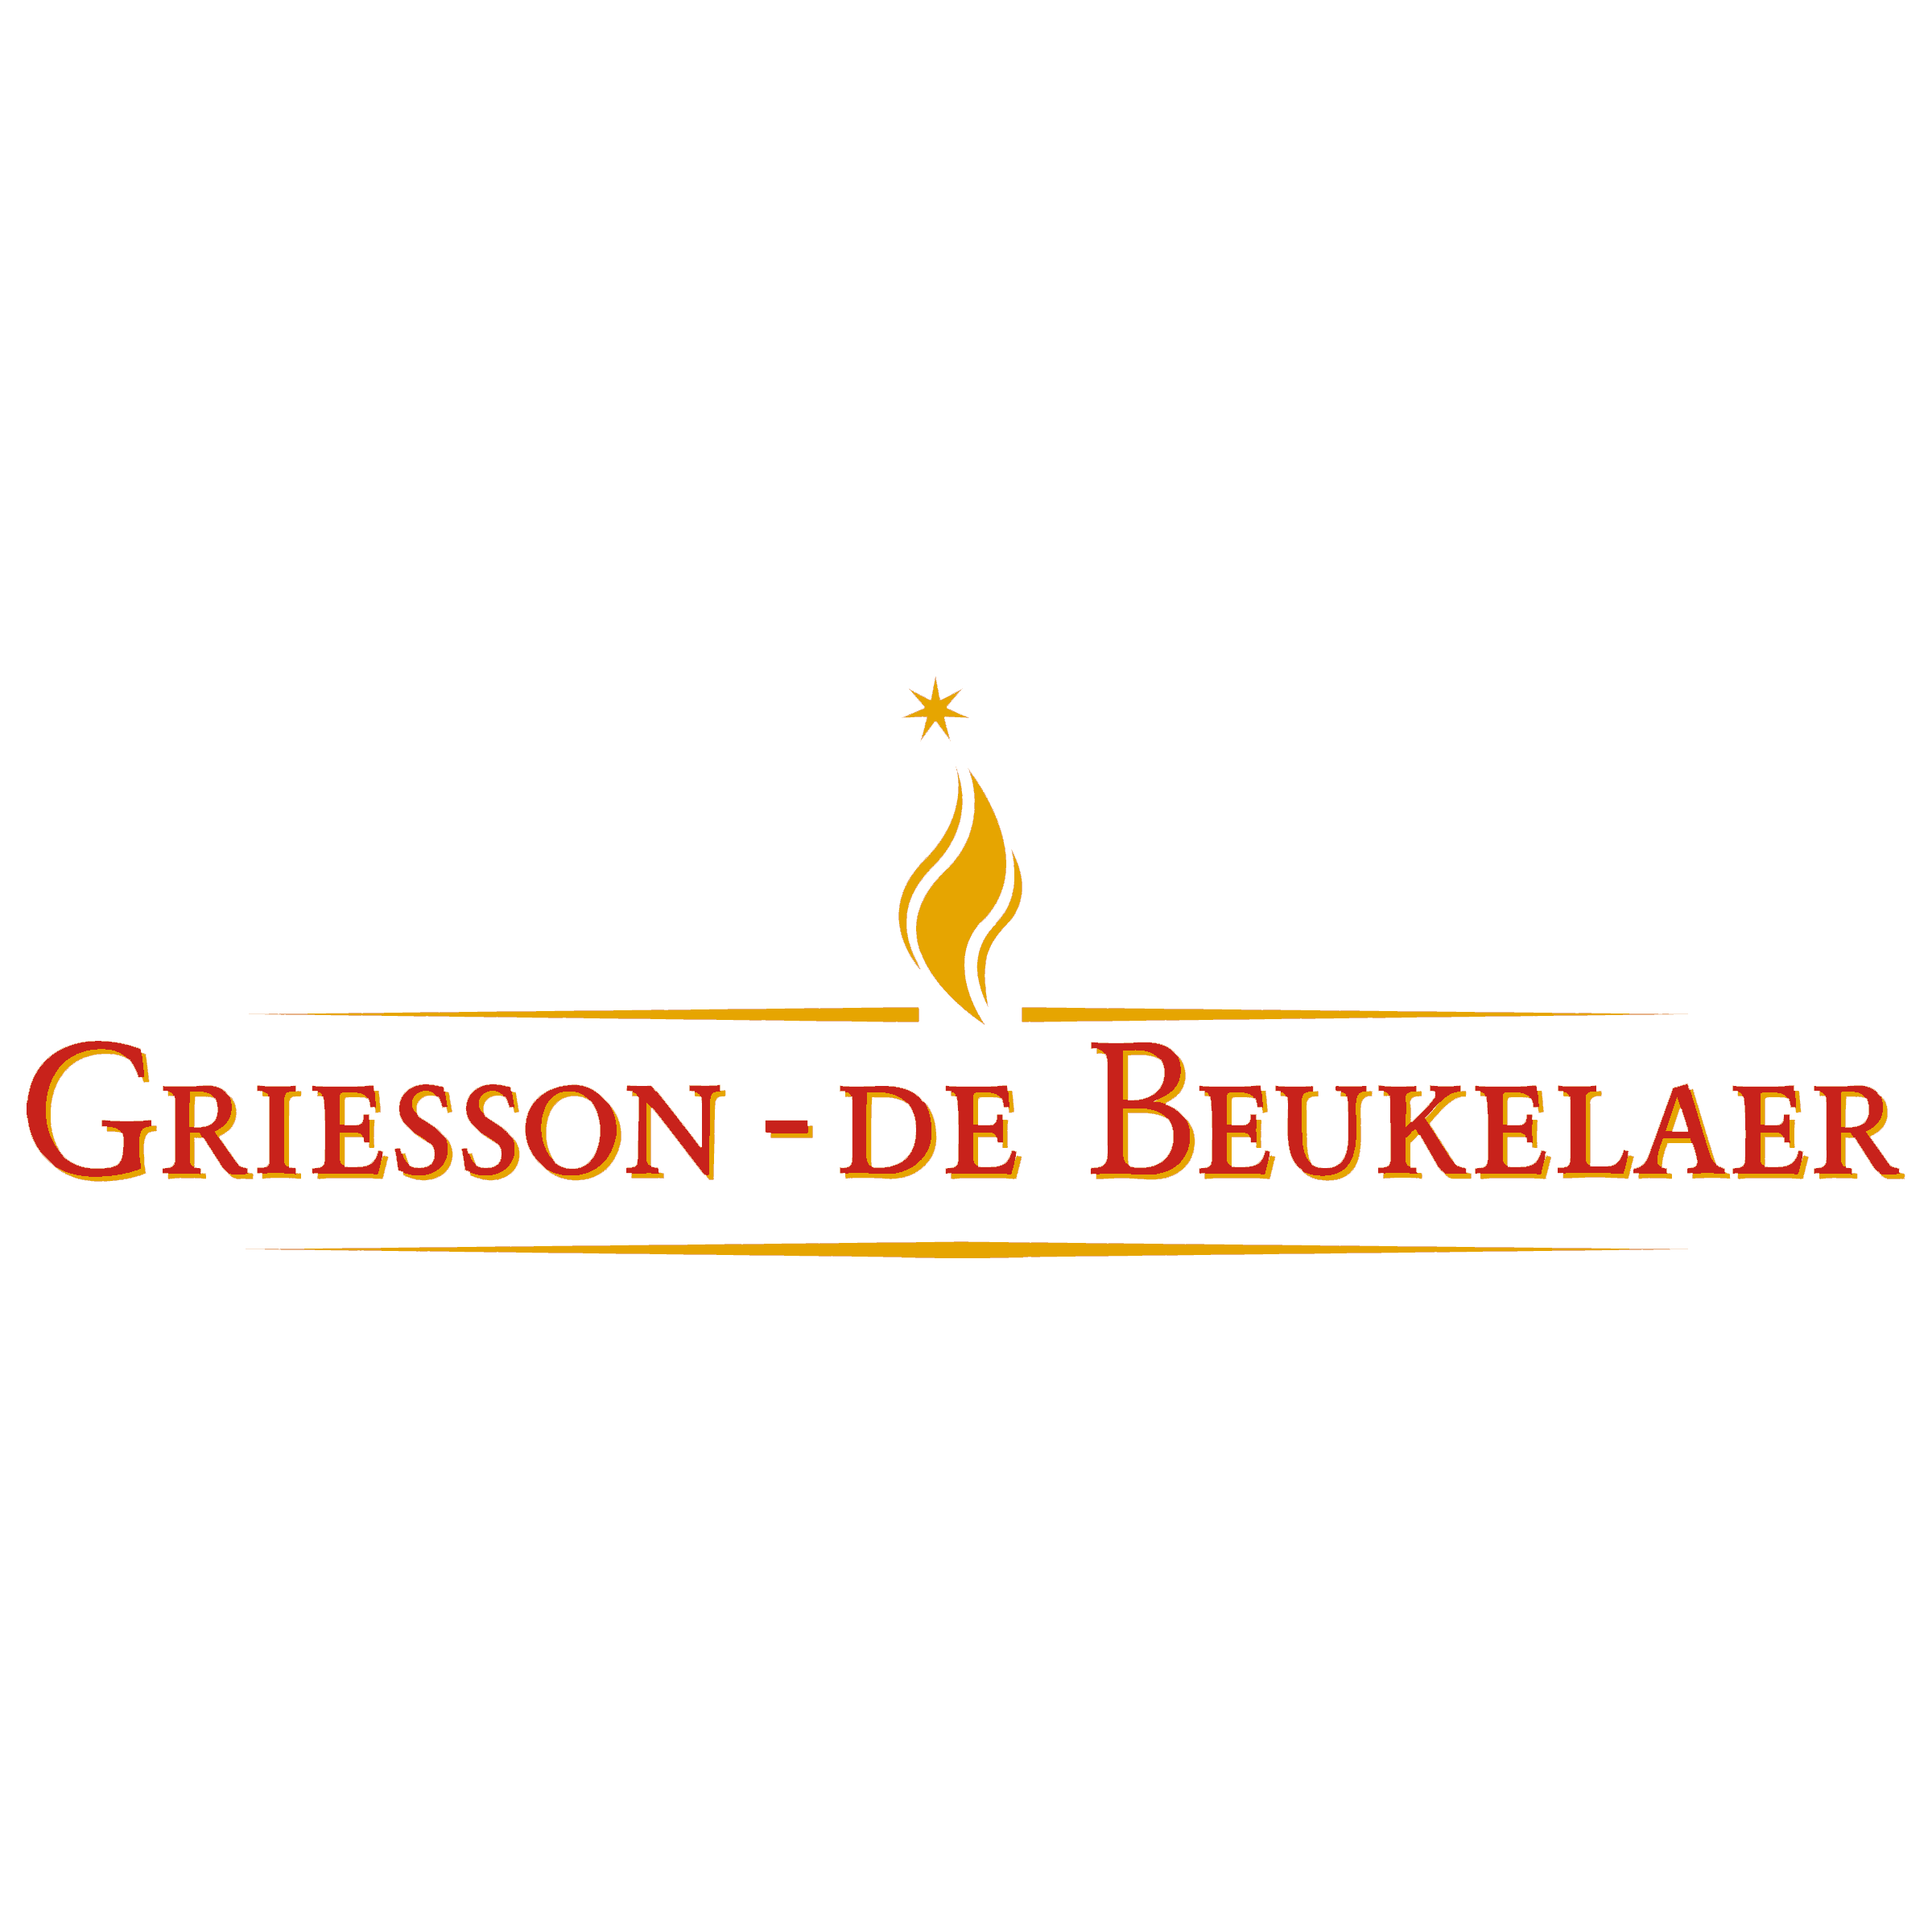 Griesson-de Beukelaer GmbH & Co KG